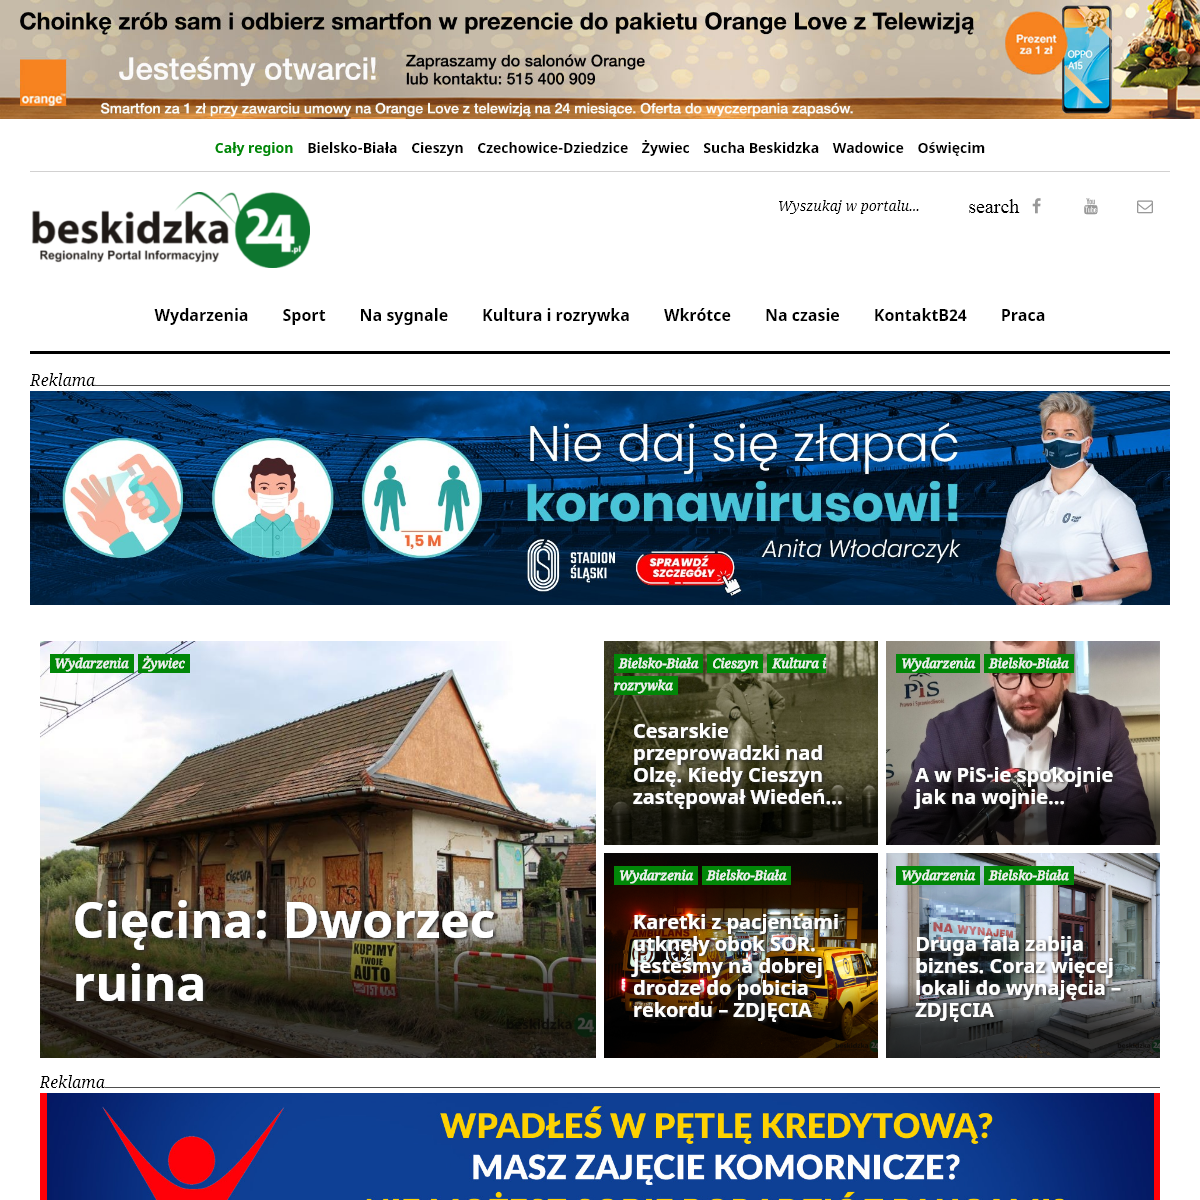 A complete backup of beskidzka24.pl